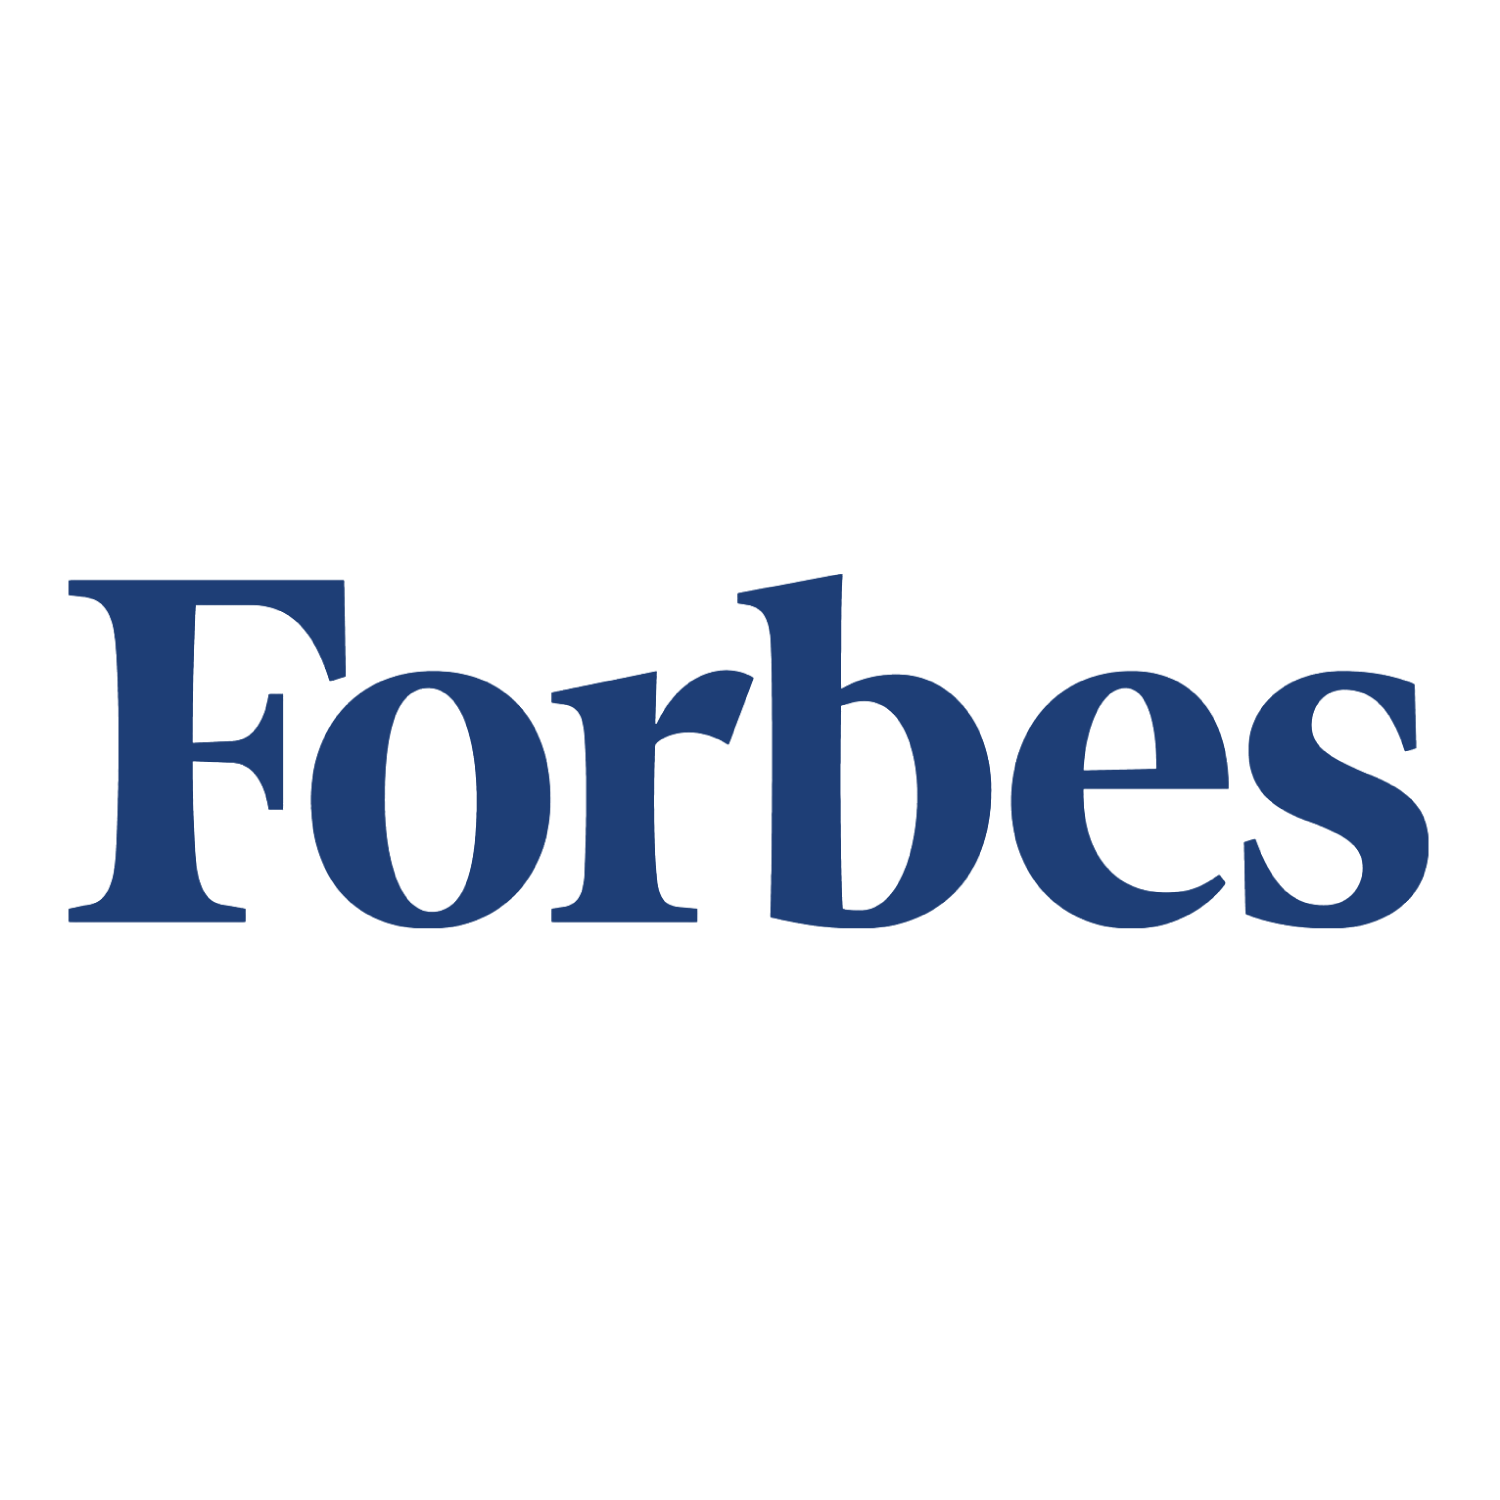 Forbes_logo_alan.png